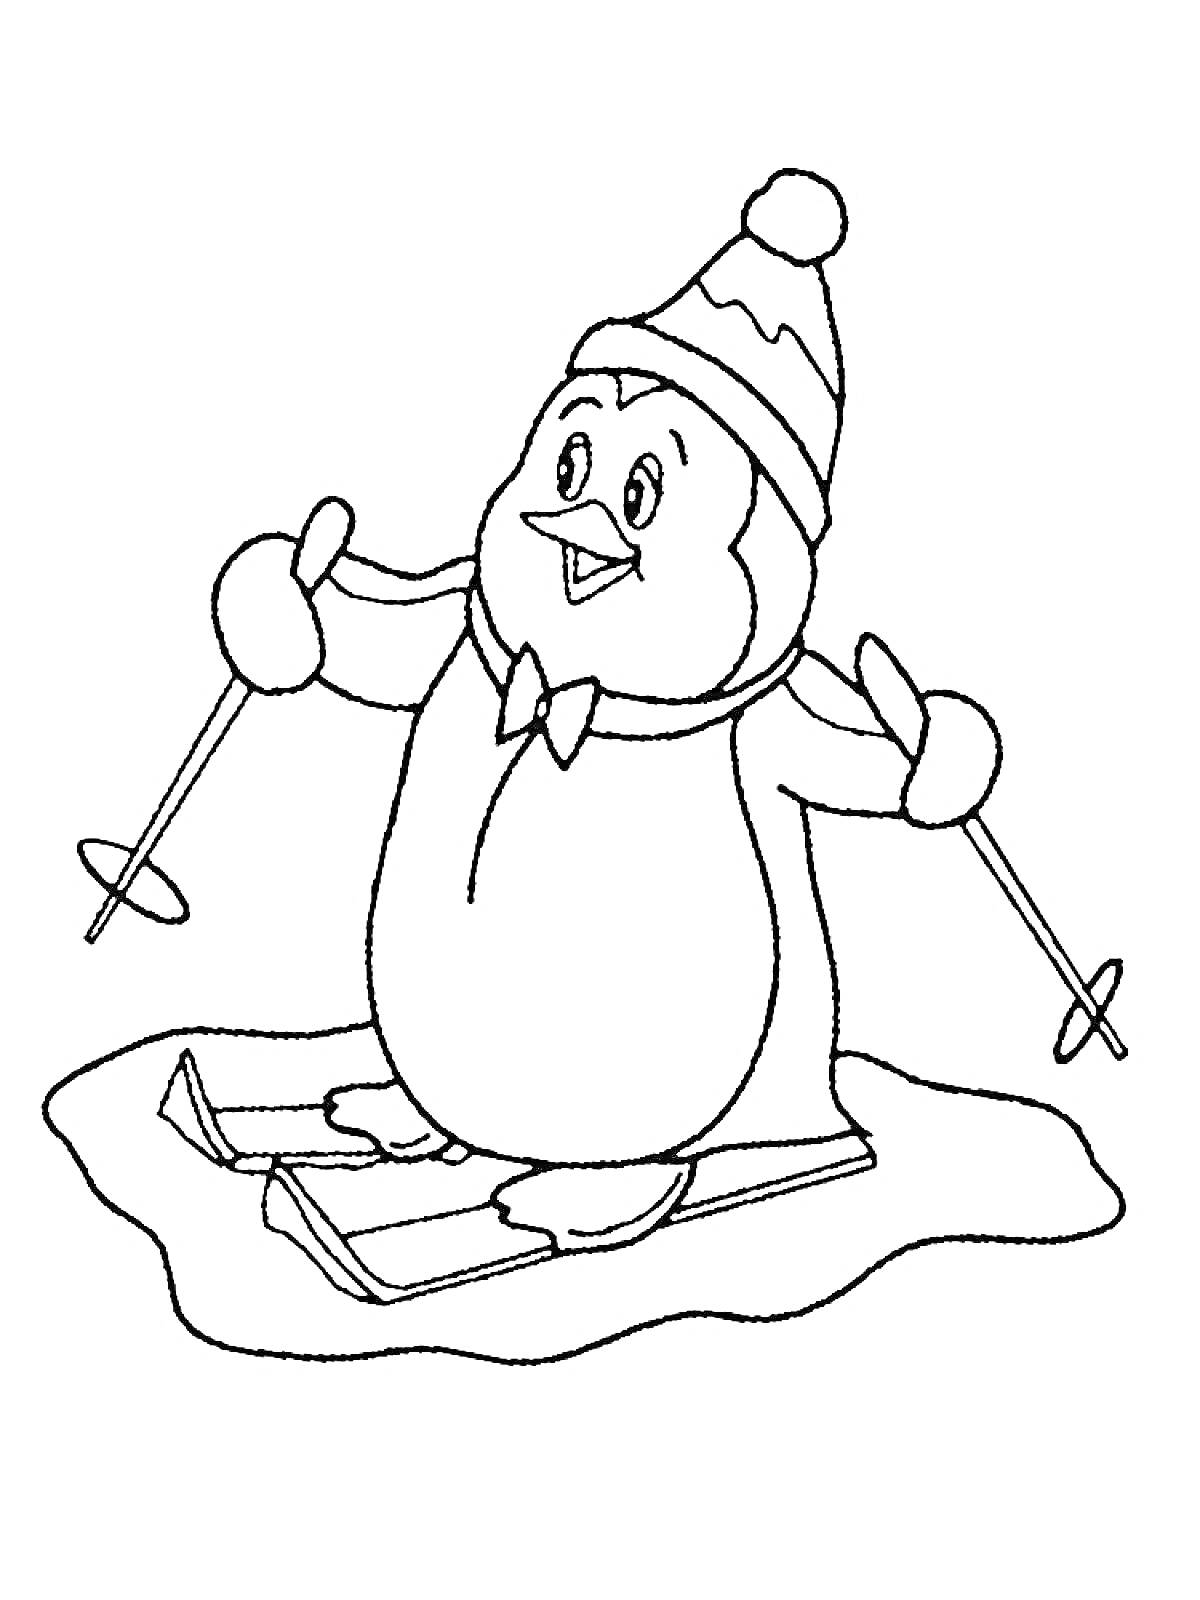 Раскраска Пингвин на лыжах с лыжными палками в шапке и шарфике, на фоне льда